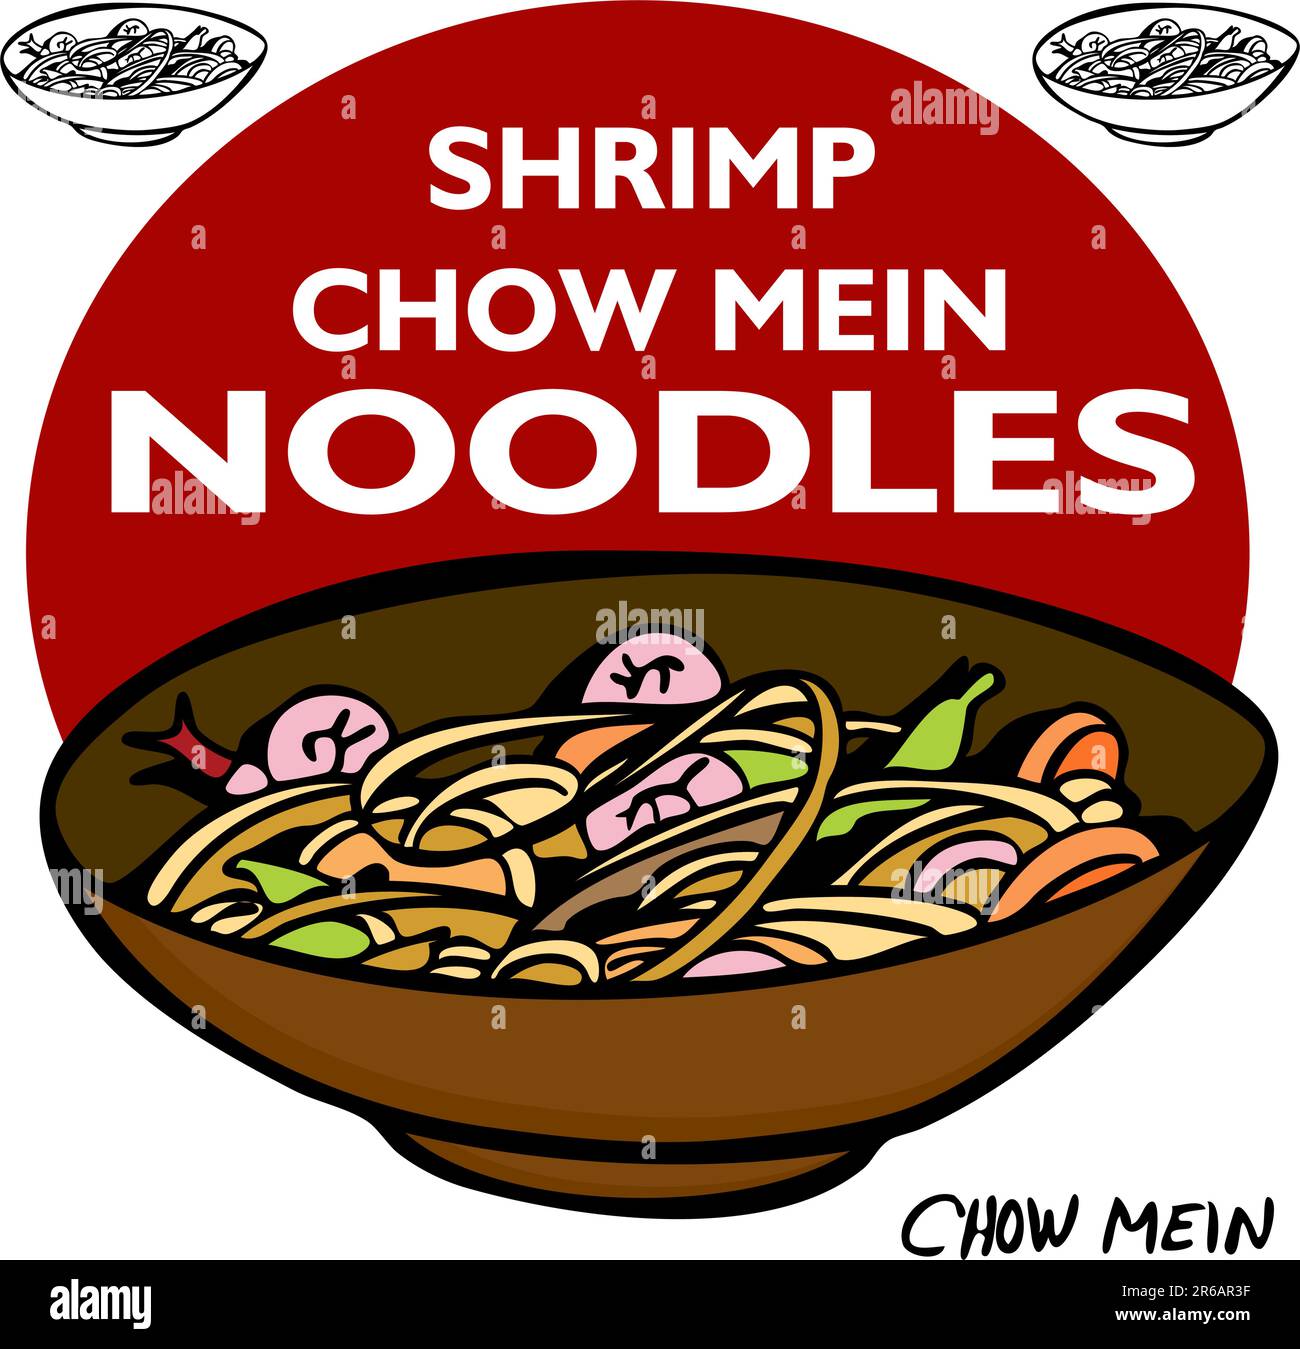 Ein Bild des Shrimp Chow Mein Nudeln. Stock Vektor